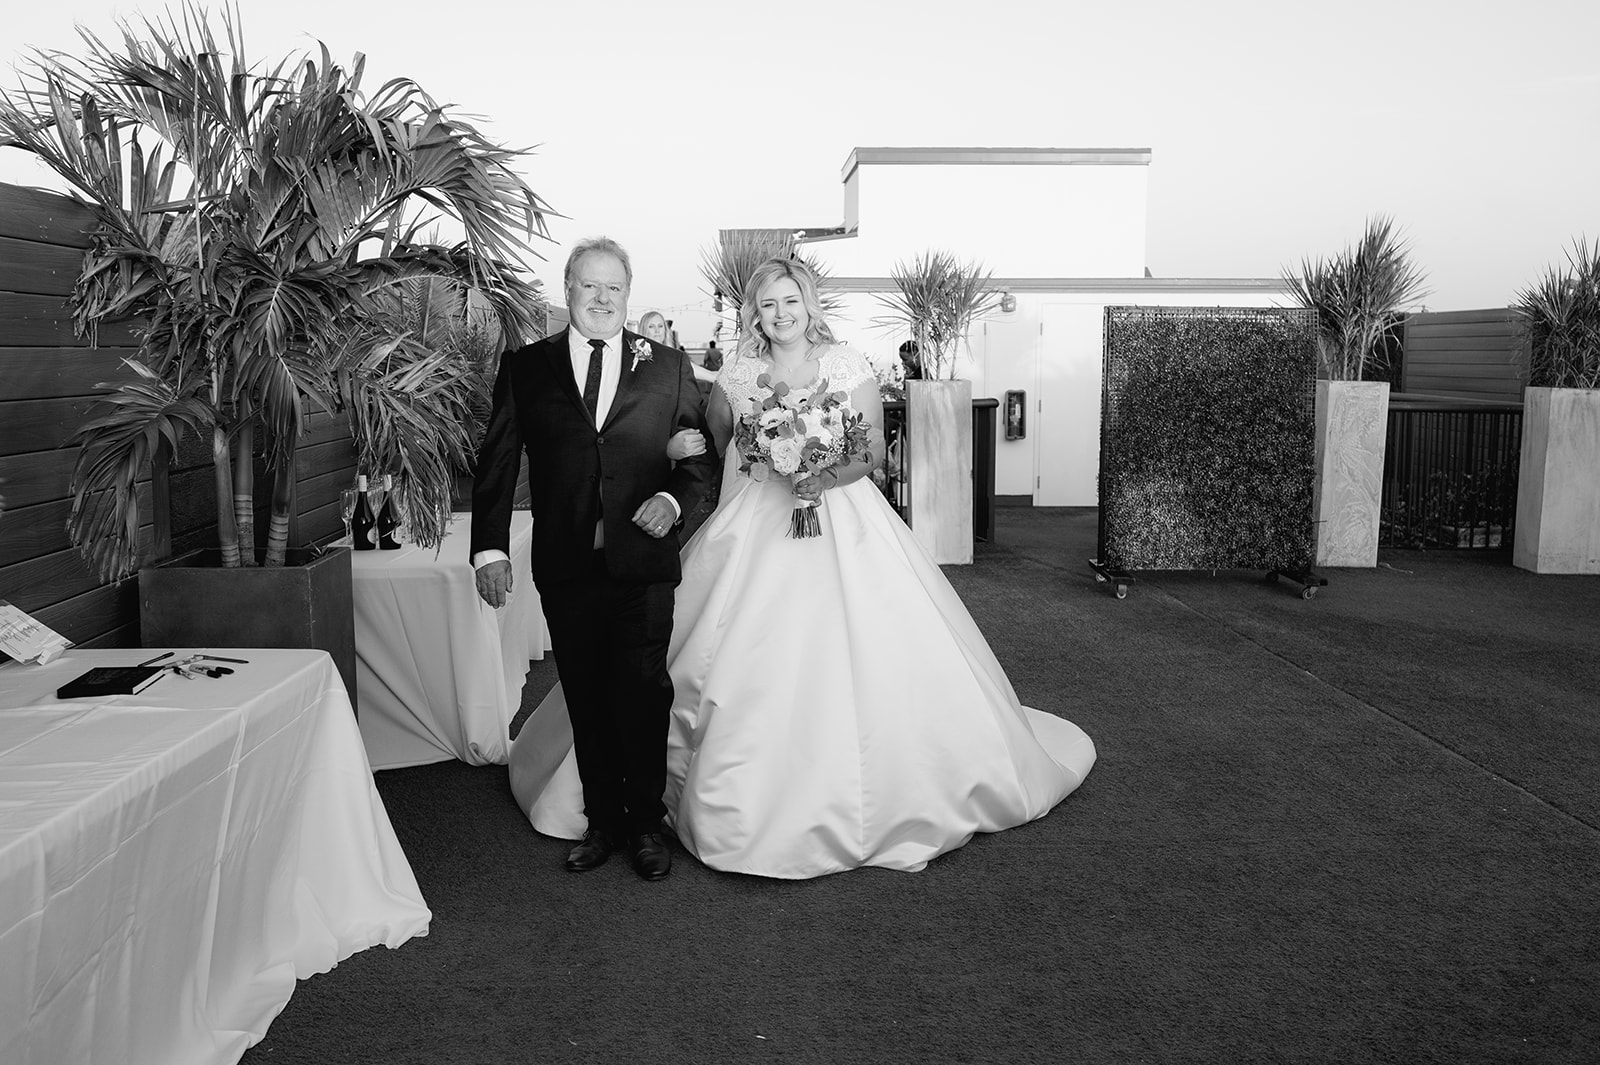 Hotel Zamora Wedding: Bridesmaids Toasting to the Newlyweds
